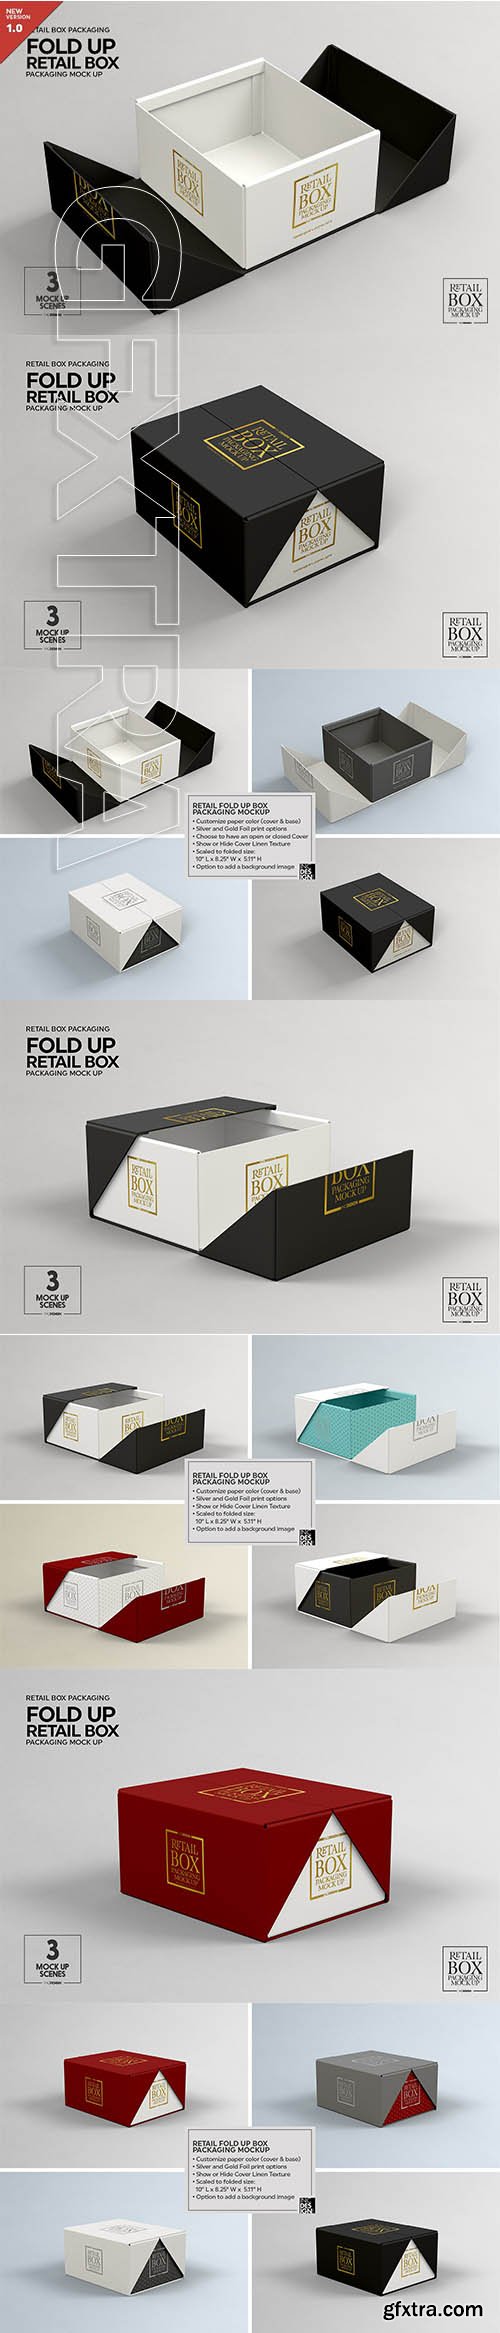 CreativeMarket - Fold Up Retail Box Packaging Mockup 3461275